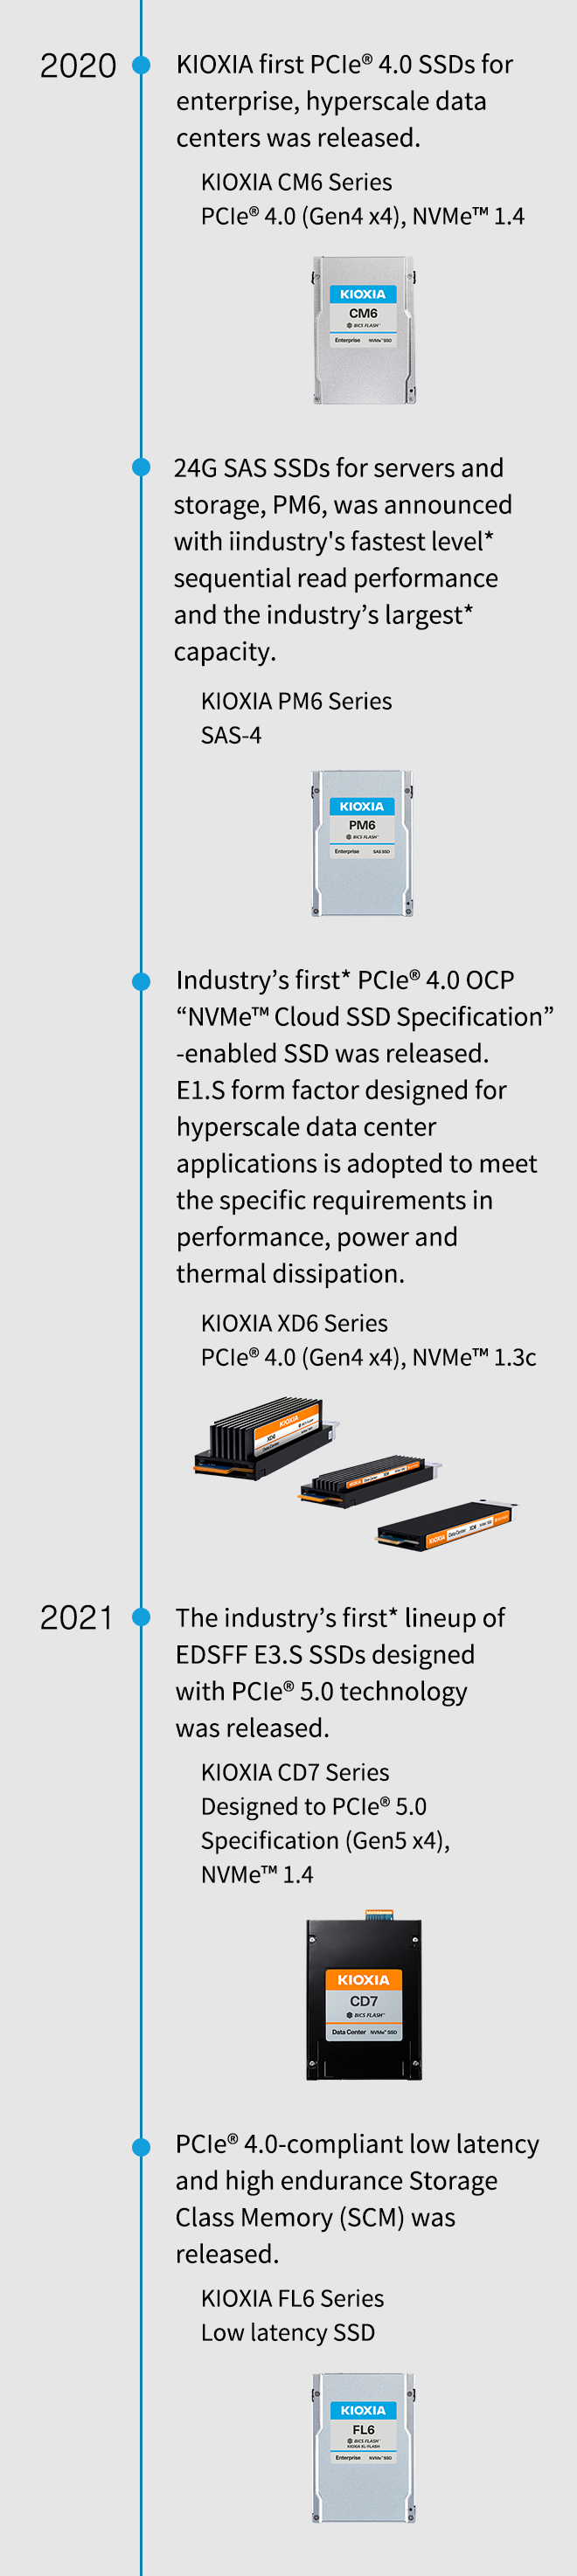 2020. KIOXIA eerste PCIe® 4.0 SSD's voor bedrijven en hyperscale datacenters werden uitgebracht. KIOXIA CM6-serie PCIe® 4.0 (Gen4 x4), NVMe™ 1.4. 24G SAS SSD's voor servers en opslag, PM6, werden aangekondigd met de snelste sequentiële leesprestaties* in de sector en de grootste* capaciteit in de sector. KIOXIA PM6-serie SAS-4. De eerste PCIe® 4.0 OCP “NVMe™ Cloud Specification”-geactiveerde SSD werd gelanceerd. E1.S-vormfactor die is ontworpen voor hyperscale datacentertoepassingen wordt gebruikt om te voldoen aan de specifieke vereisten op het gebied van prestaties, vermogen en thermische dissipatie. KIOXIA XD6-serie PCIe® 4.0 (Gen4 x4), NVMe™ 1.3c. 2021. De eerste* reeks EDSFF E3.S SSD's in de sector, ontworpen met PCIe® 5.0-technologie, werd uitgebracht. KIOXIA CD7-serie ontworpen volgens PCIe® 5.0-specificatie (Gen5 x4), NVMe™ 1.4. PCIe® 4.0-compatibel opslagklasse geheugen (SCM) met lage latentie en hoge duurzaamheid werd uitgebracht. KIOXIA FL6-serie SSD met lage latentie